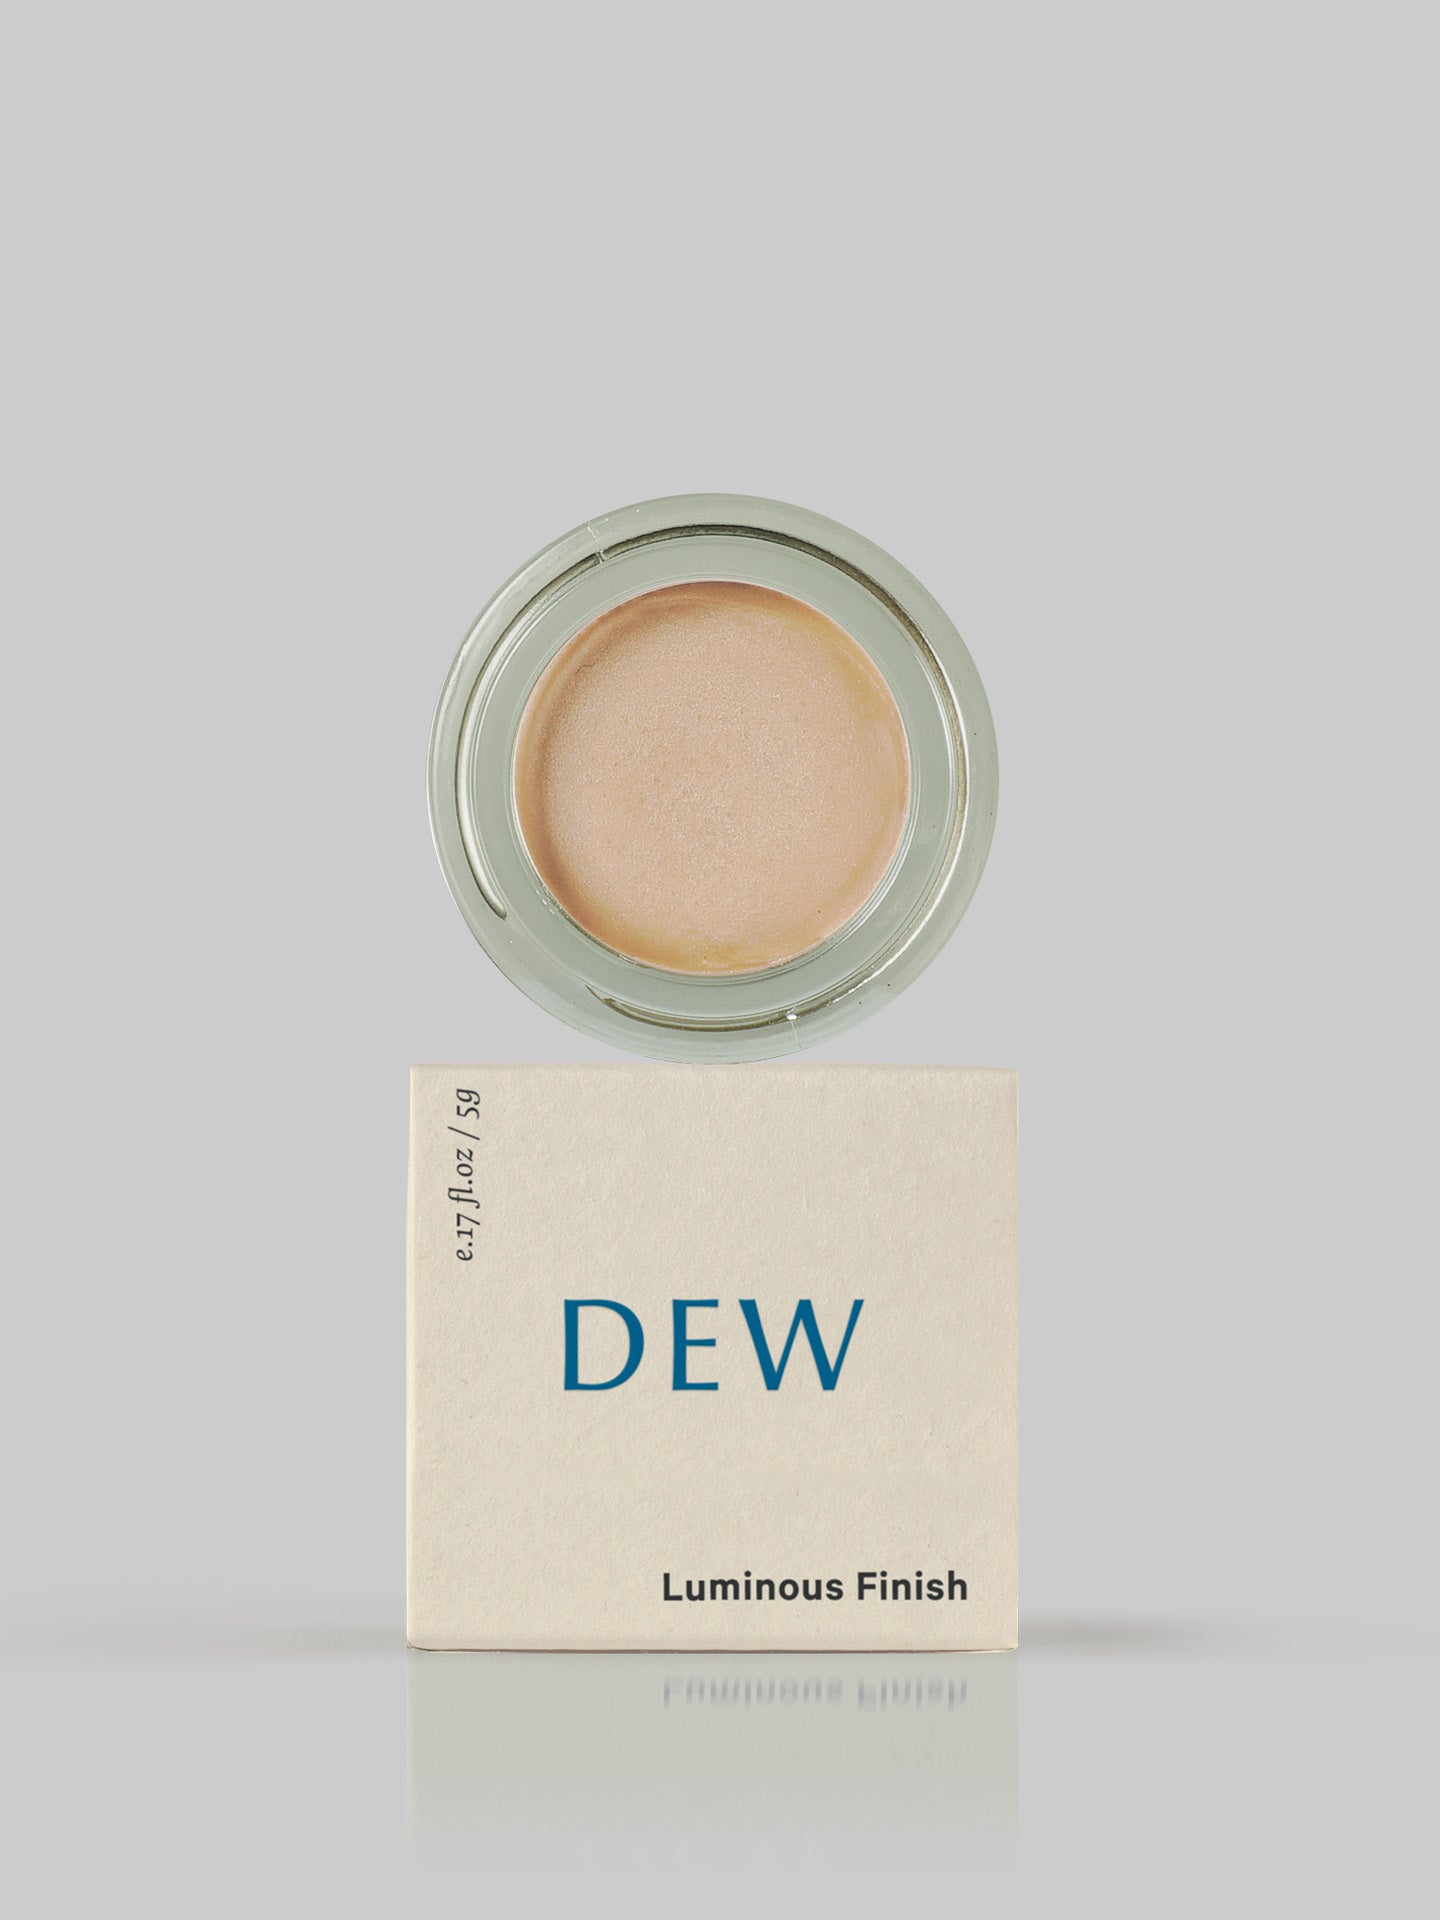 MARYSE Dew – Luminous Finish blush.